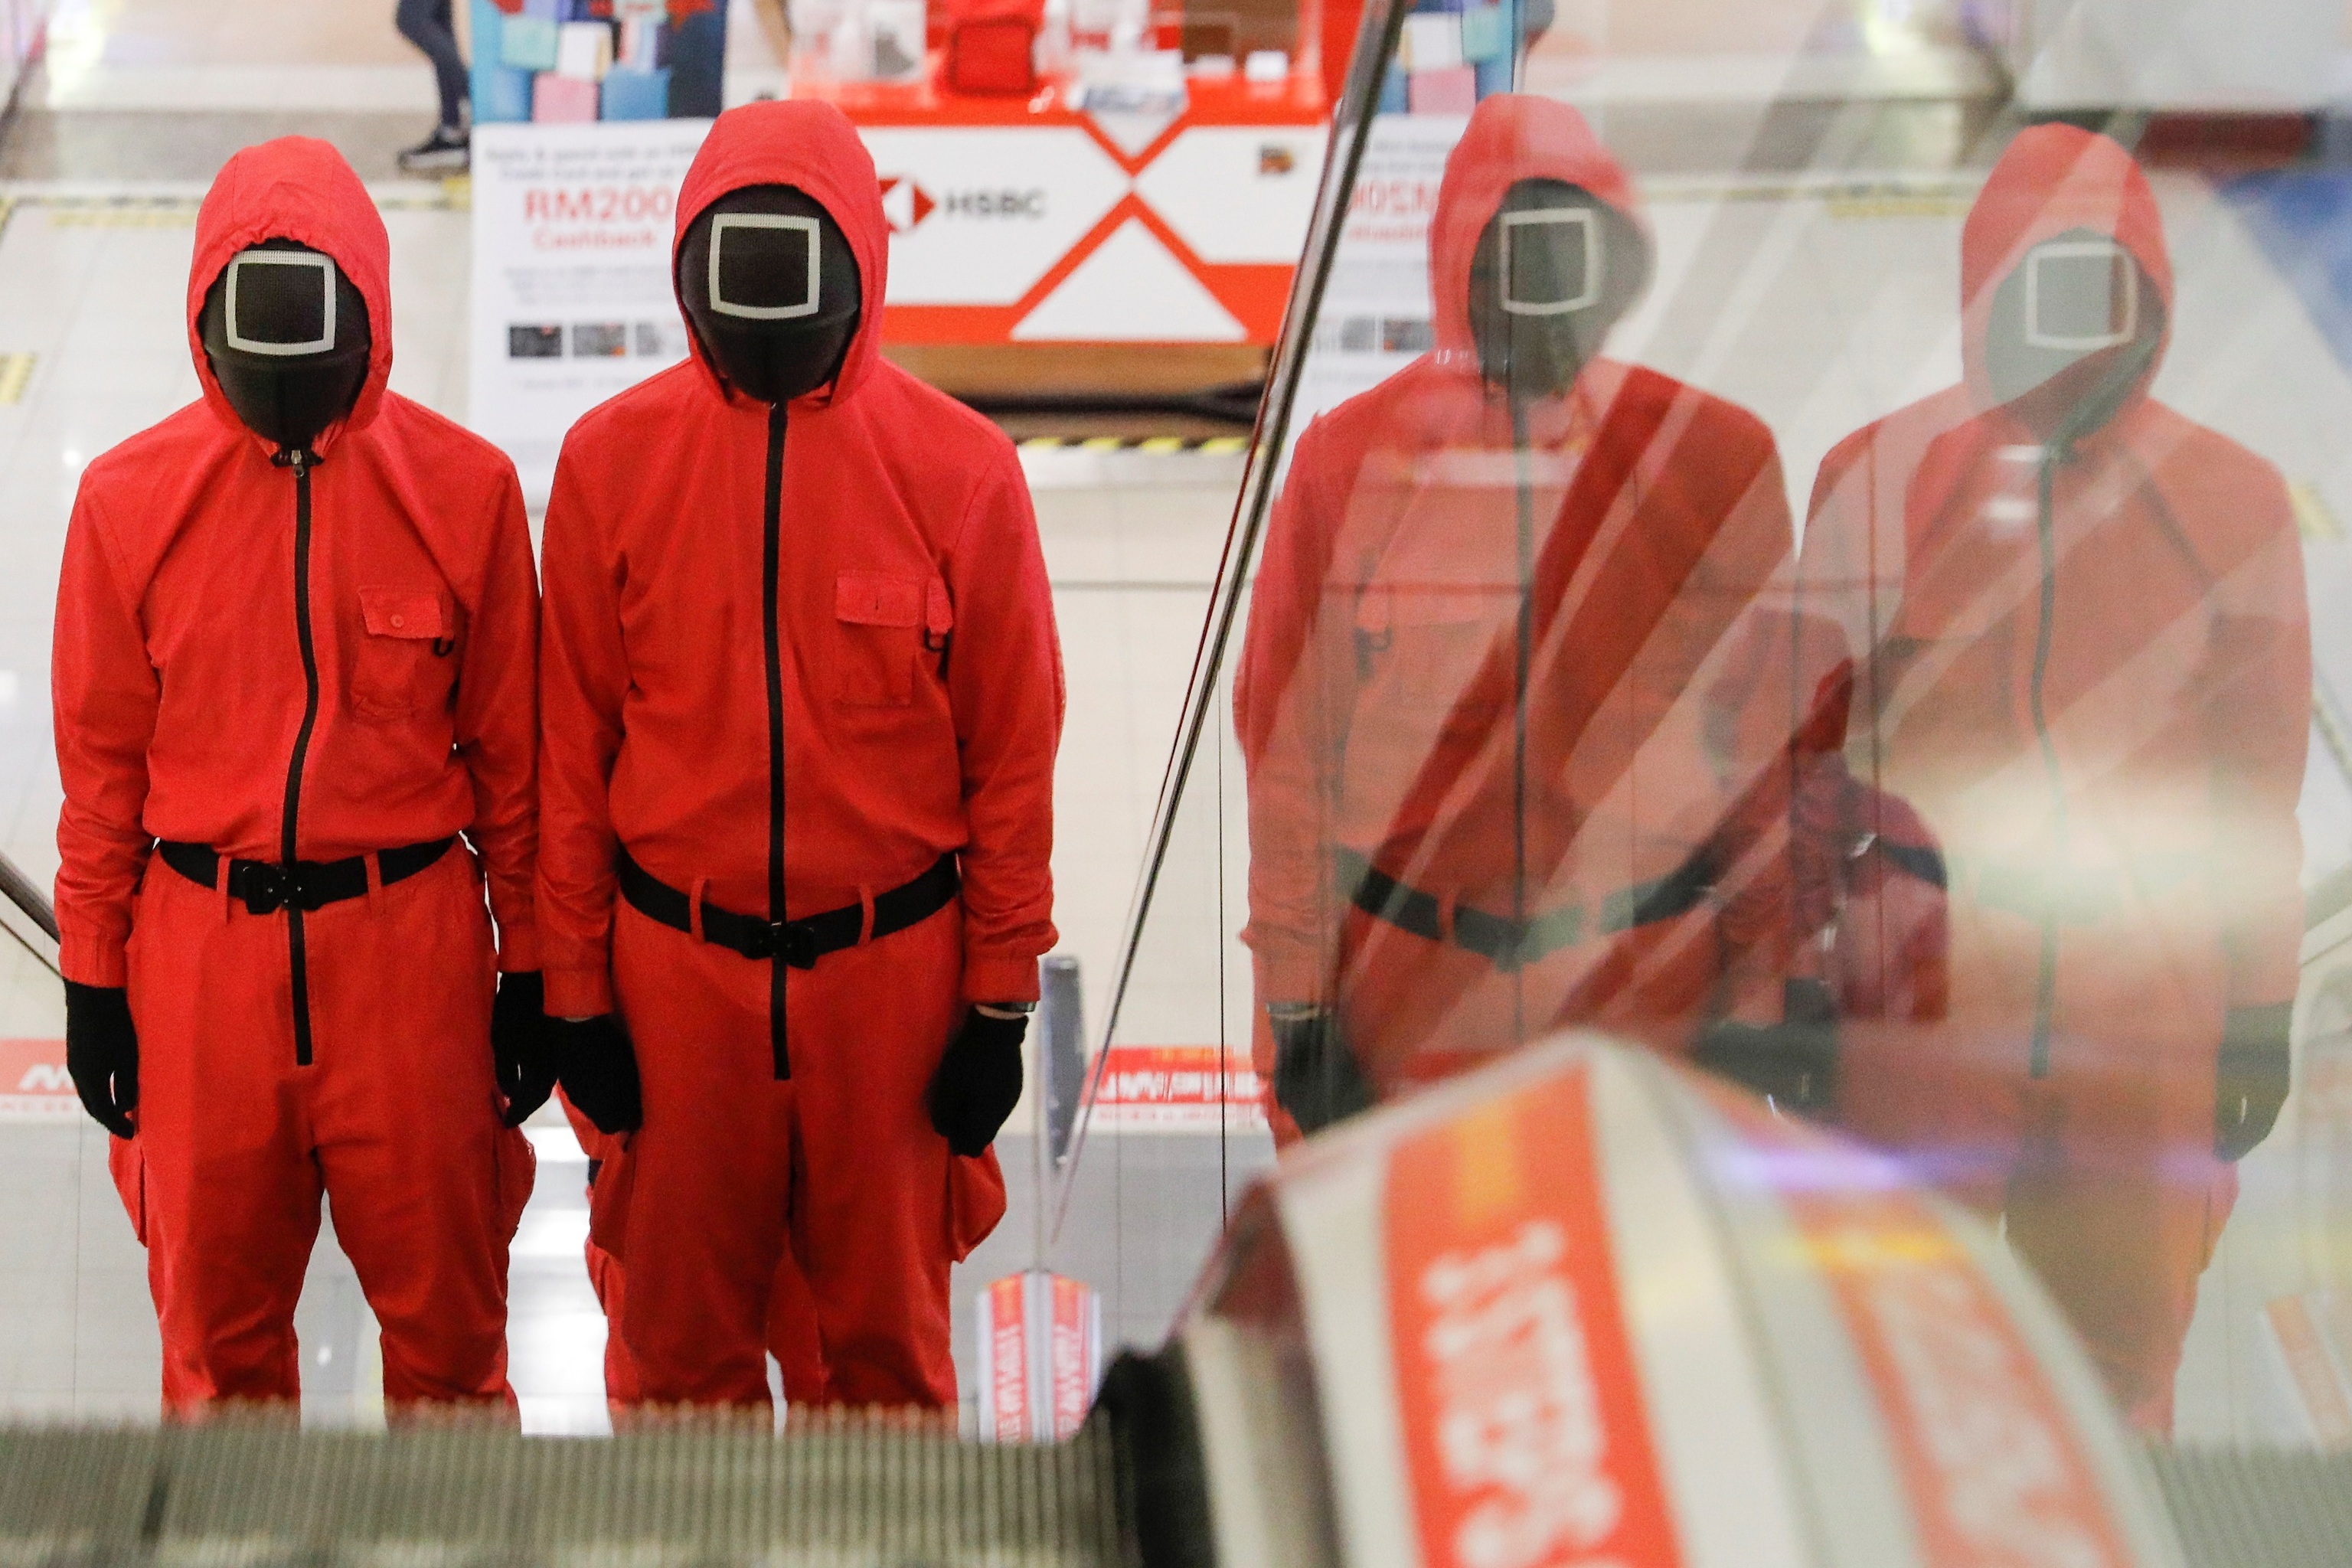 Dos personas disfrazadas de guardianes de la serie de Netflix El juego del calamar, subiendo las escaleras mecnicas de un centro comercial de Malasia.